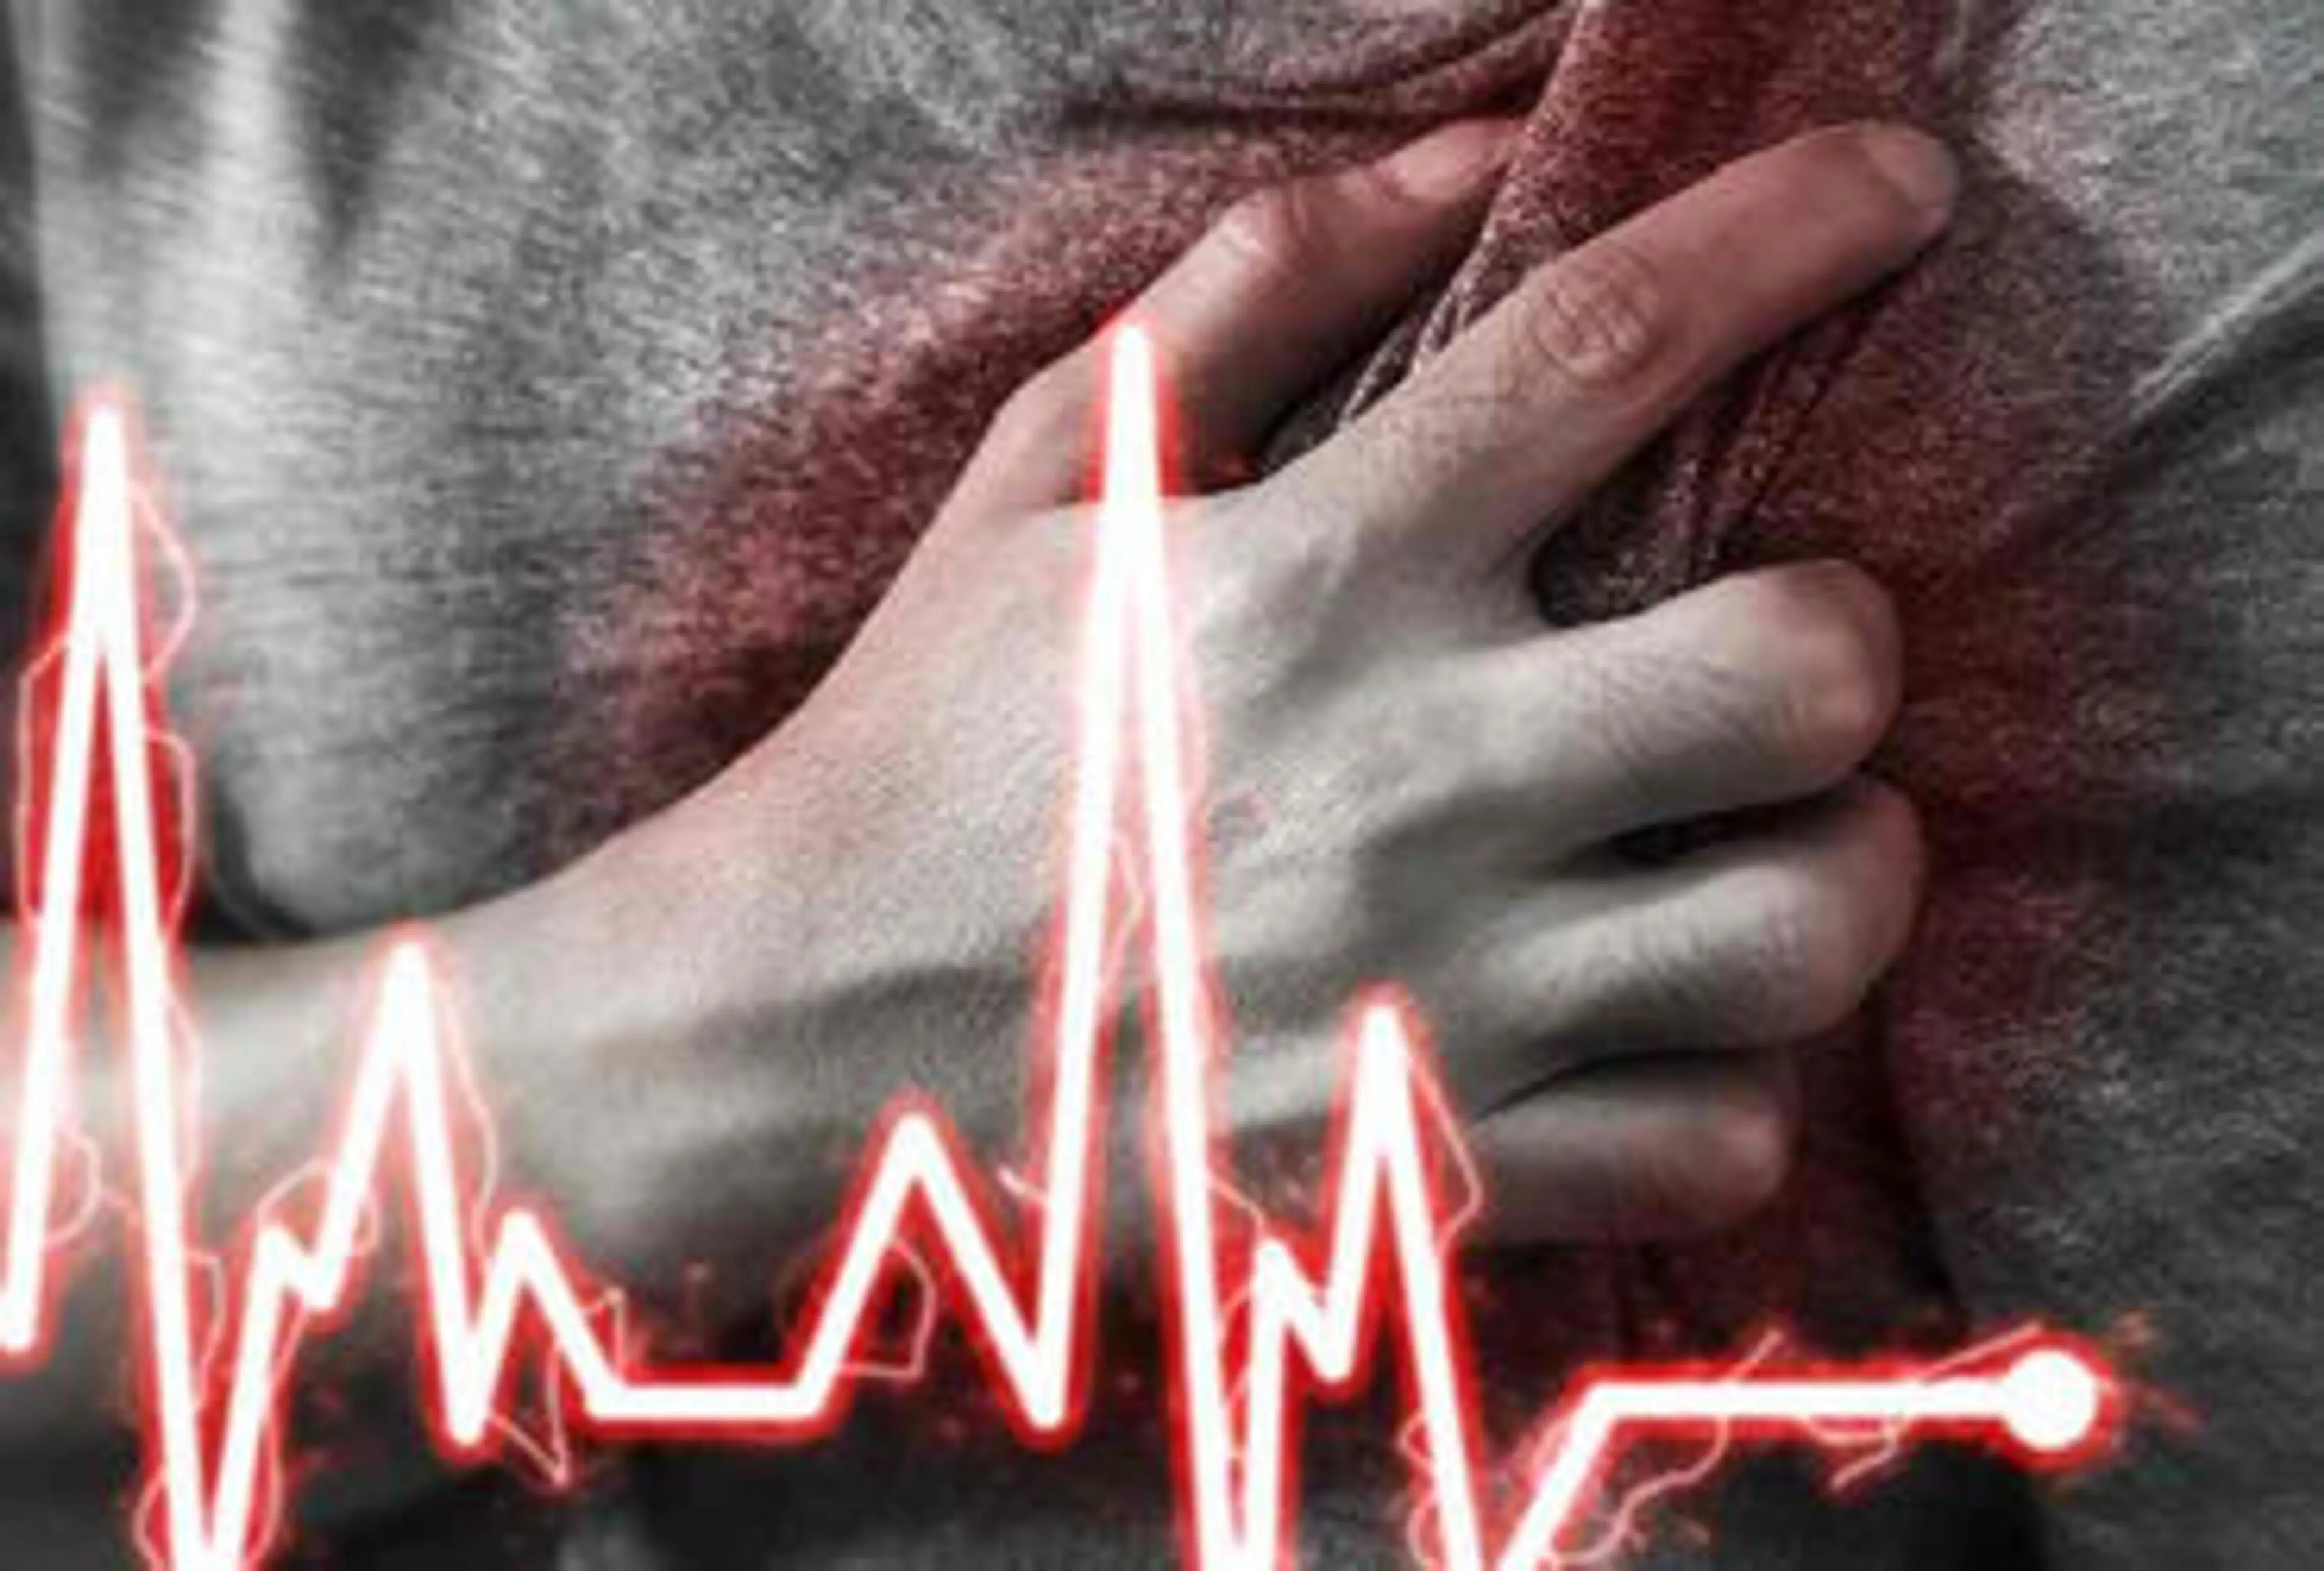 Rajkot’s heart health crisis: Three under age 45 succumb to heart attacks